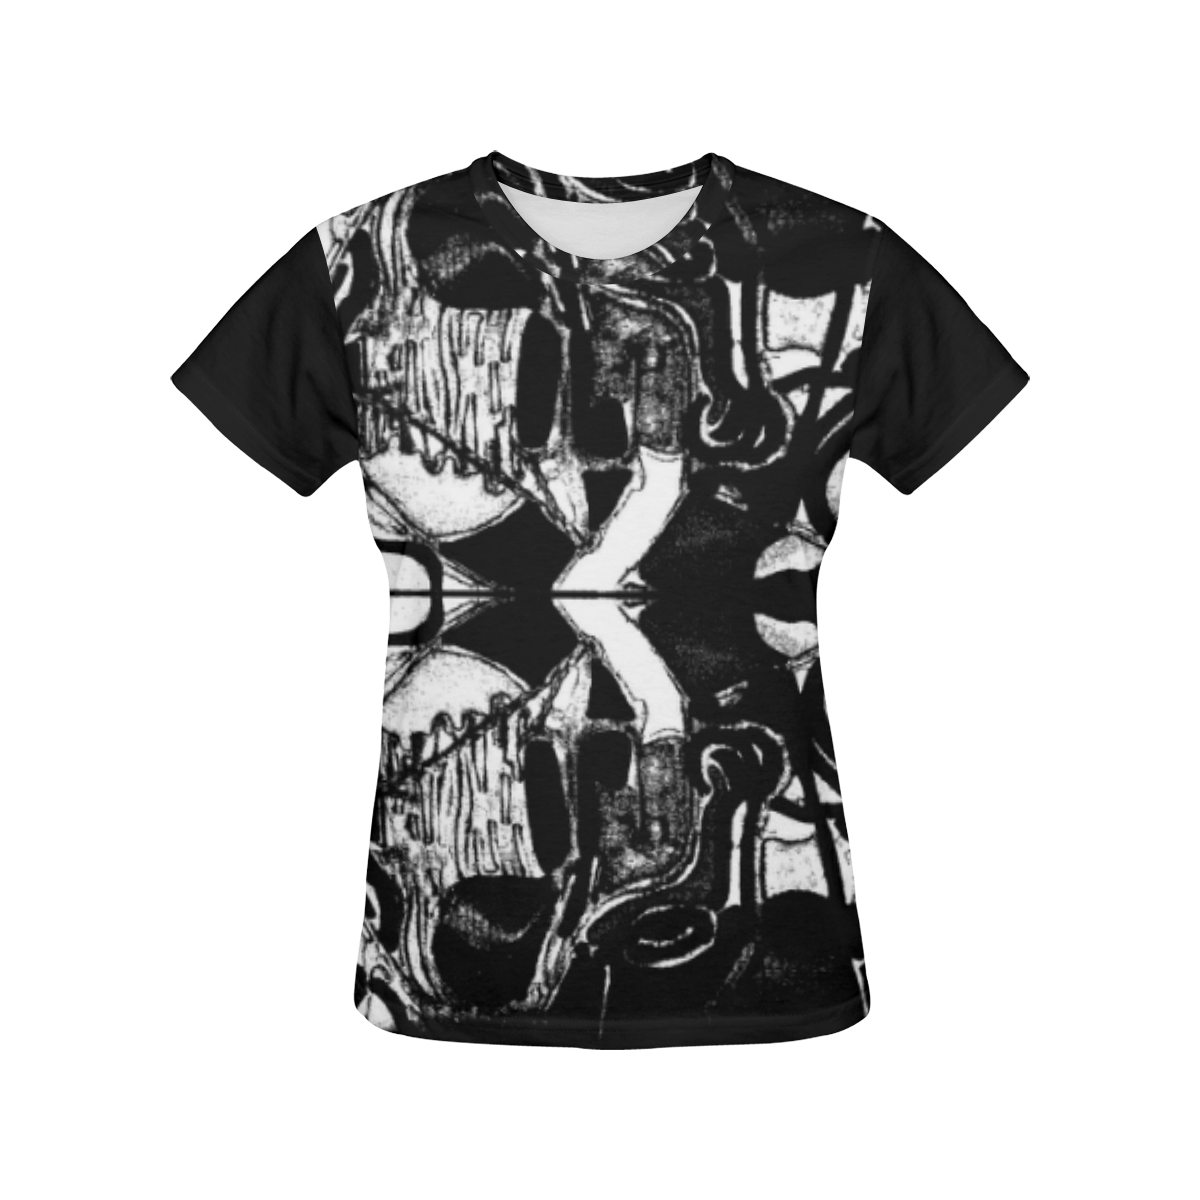 Desier All Over Print T-Shirt for Women (USA Size) (Model T40)